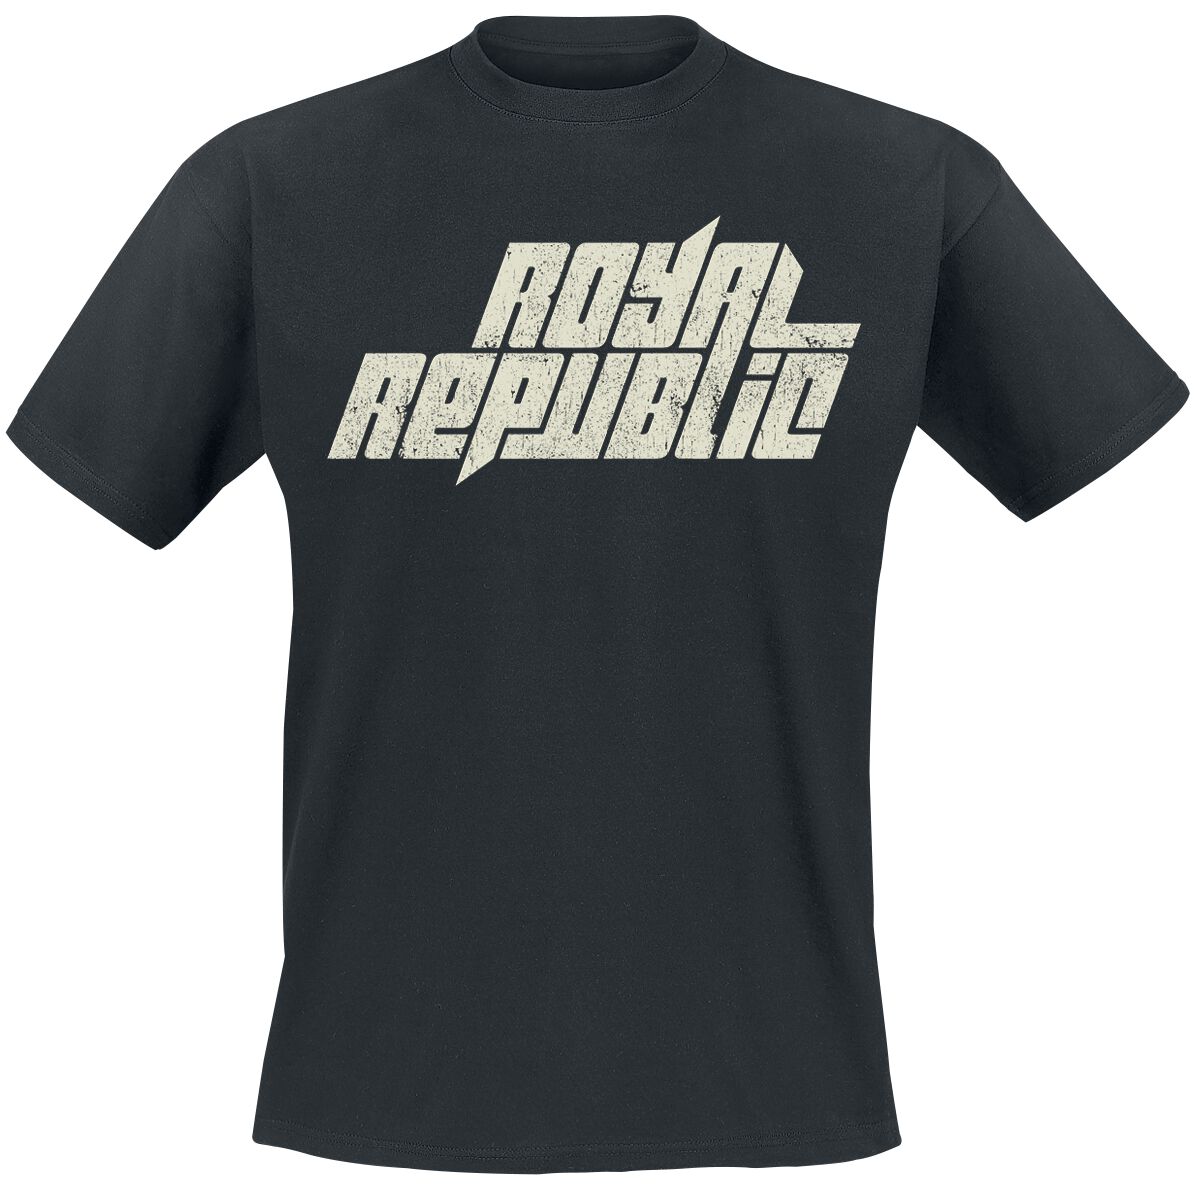 Royal Republic T-Shirt - Vintage Logo - S bis 5XL - für Männer - Größe 4XL - schwarz  - Lizenziertes Merchandise!